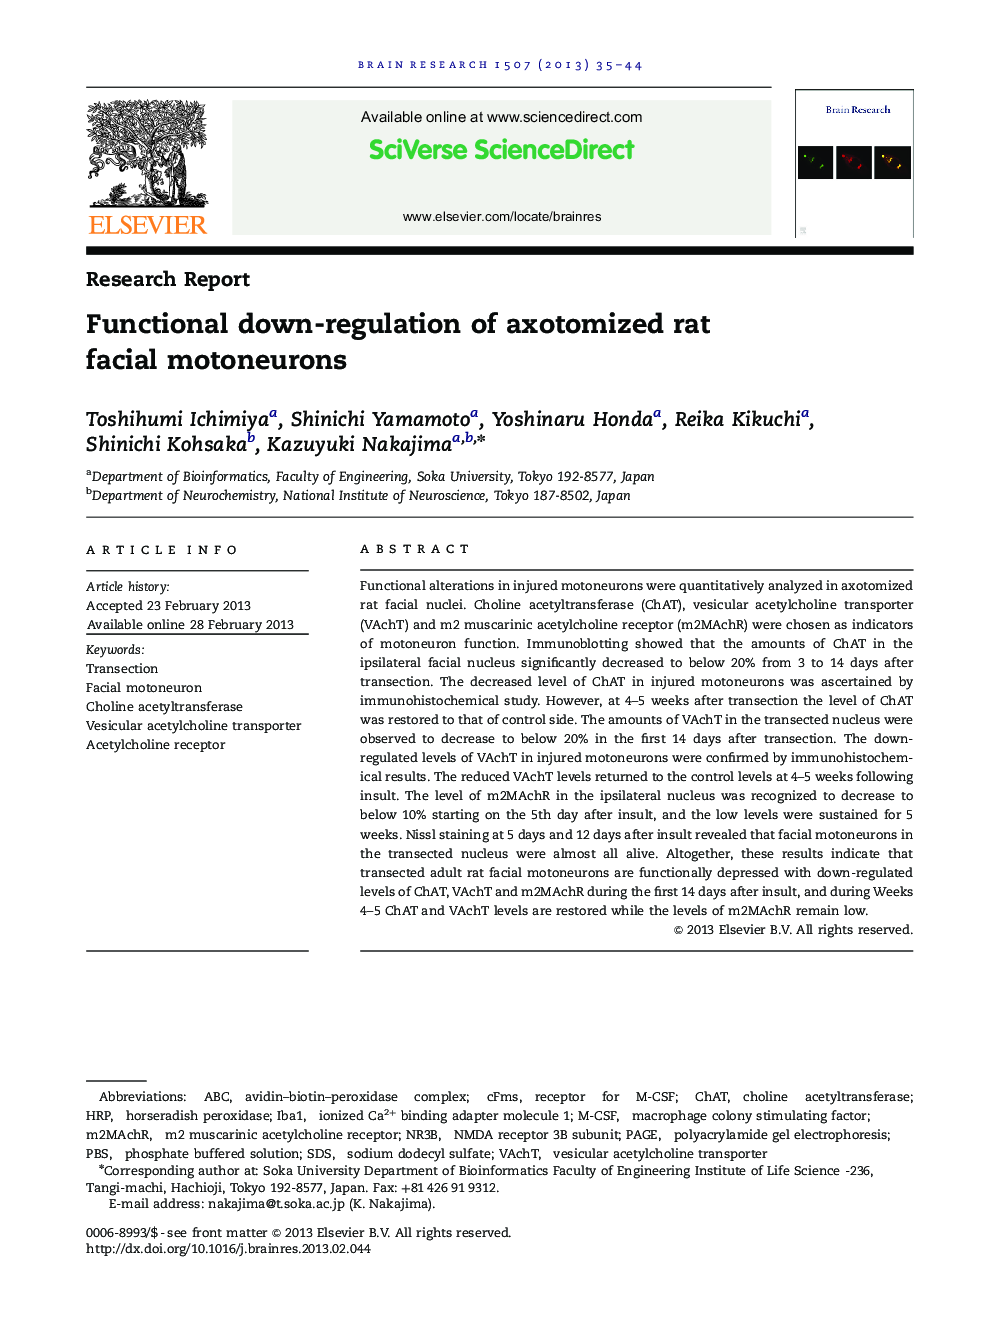 Functional down-regulation of axotomized rat facial motoneurons